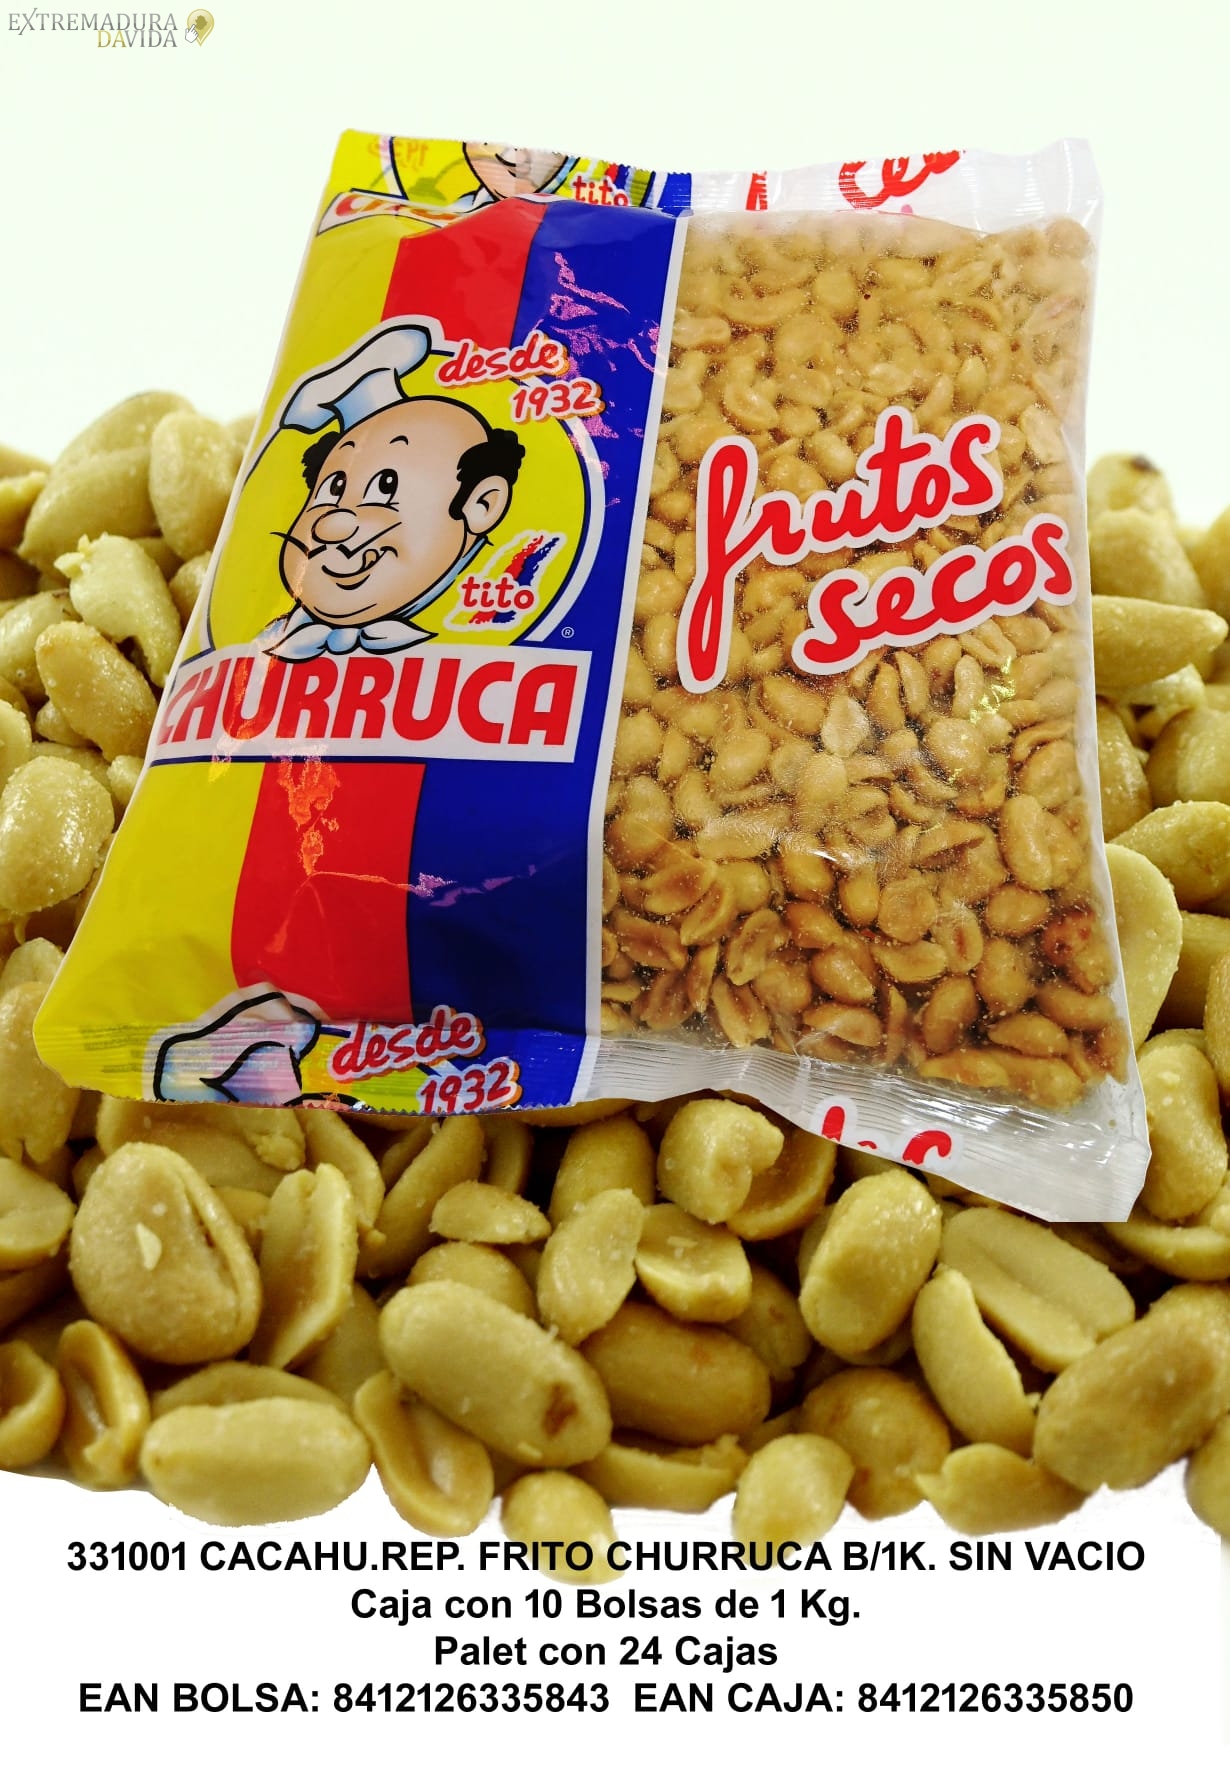 Distribuidor de snack en Tierra de Barros Aceuchal Luis Prieto